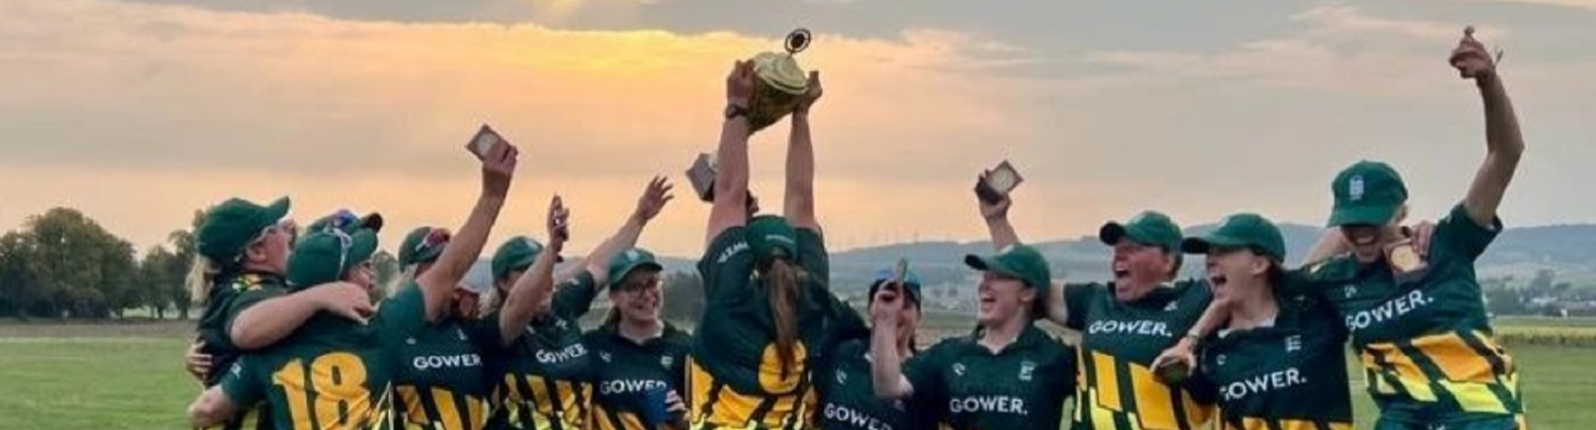 Guernsey Women’s Cricket Team Celebration